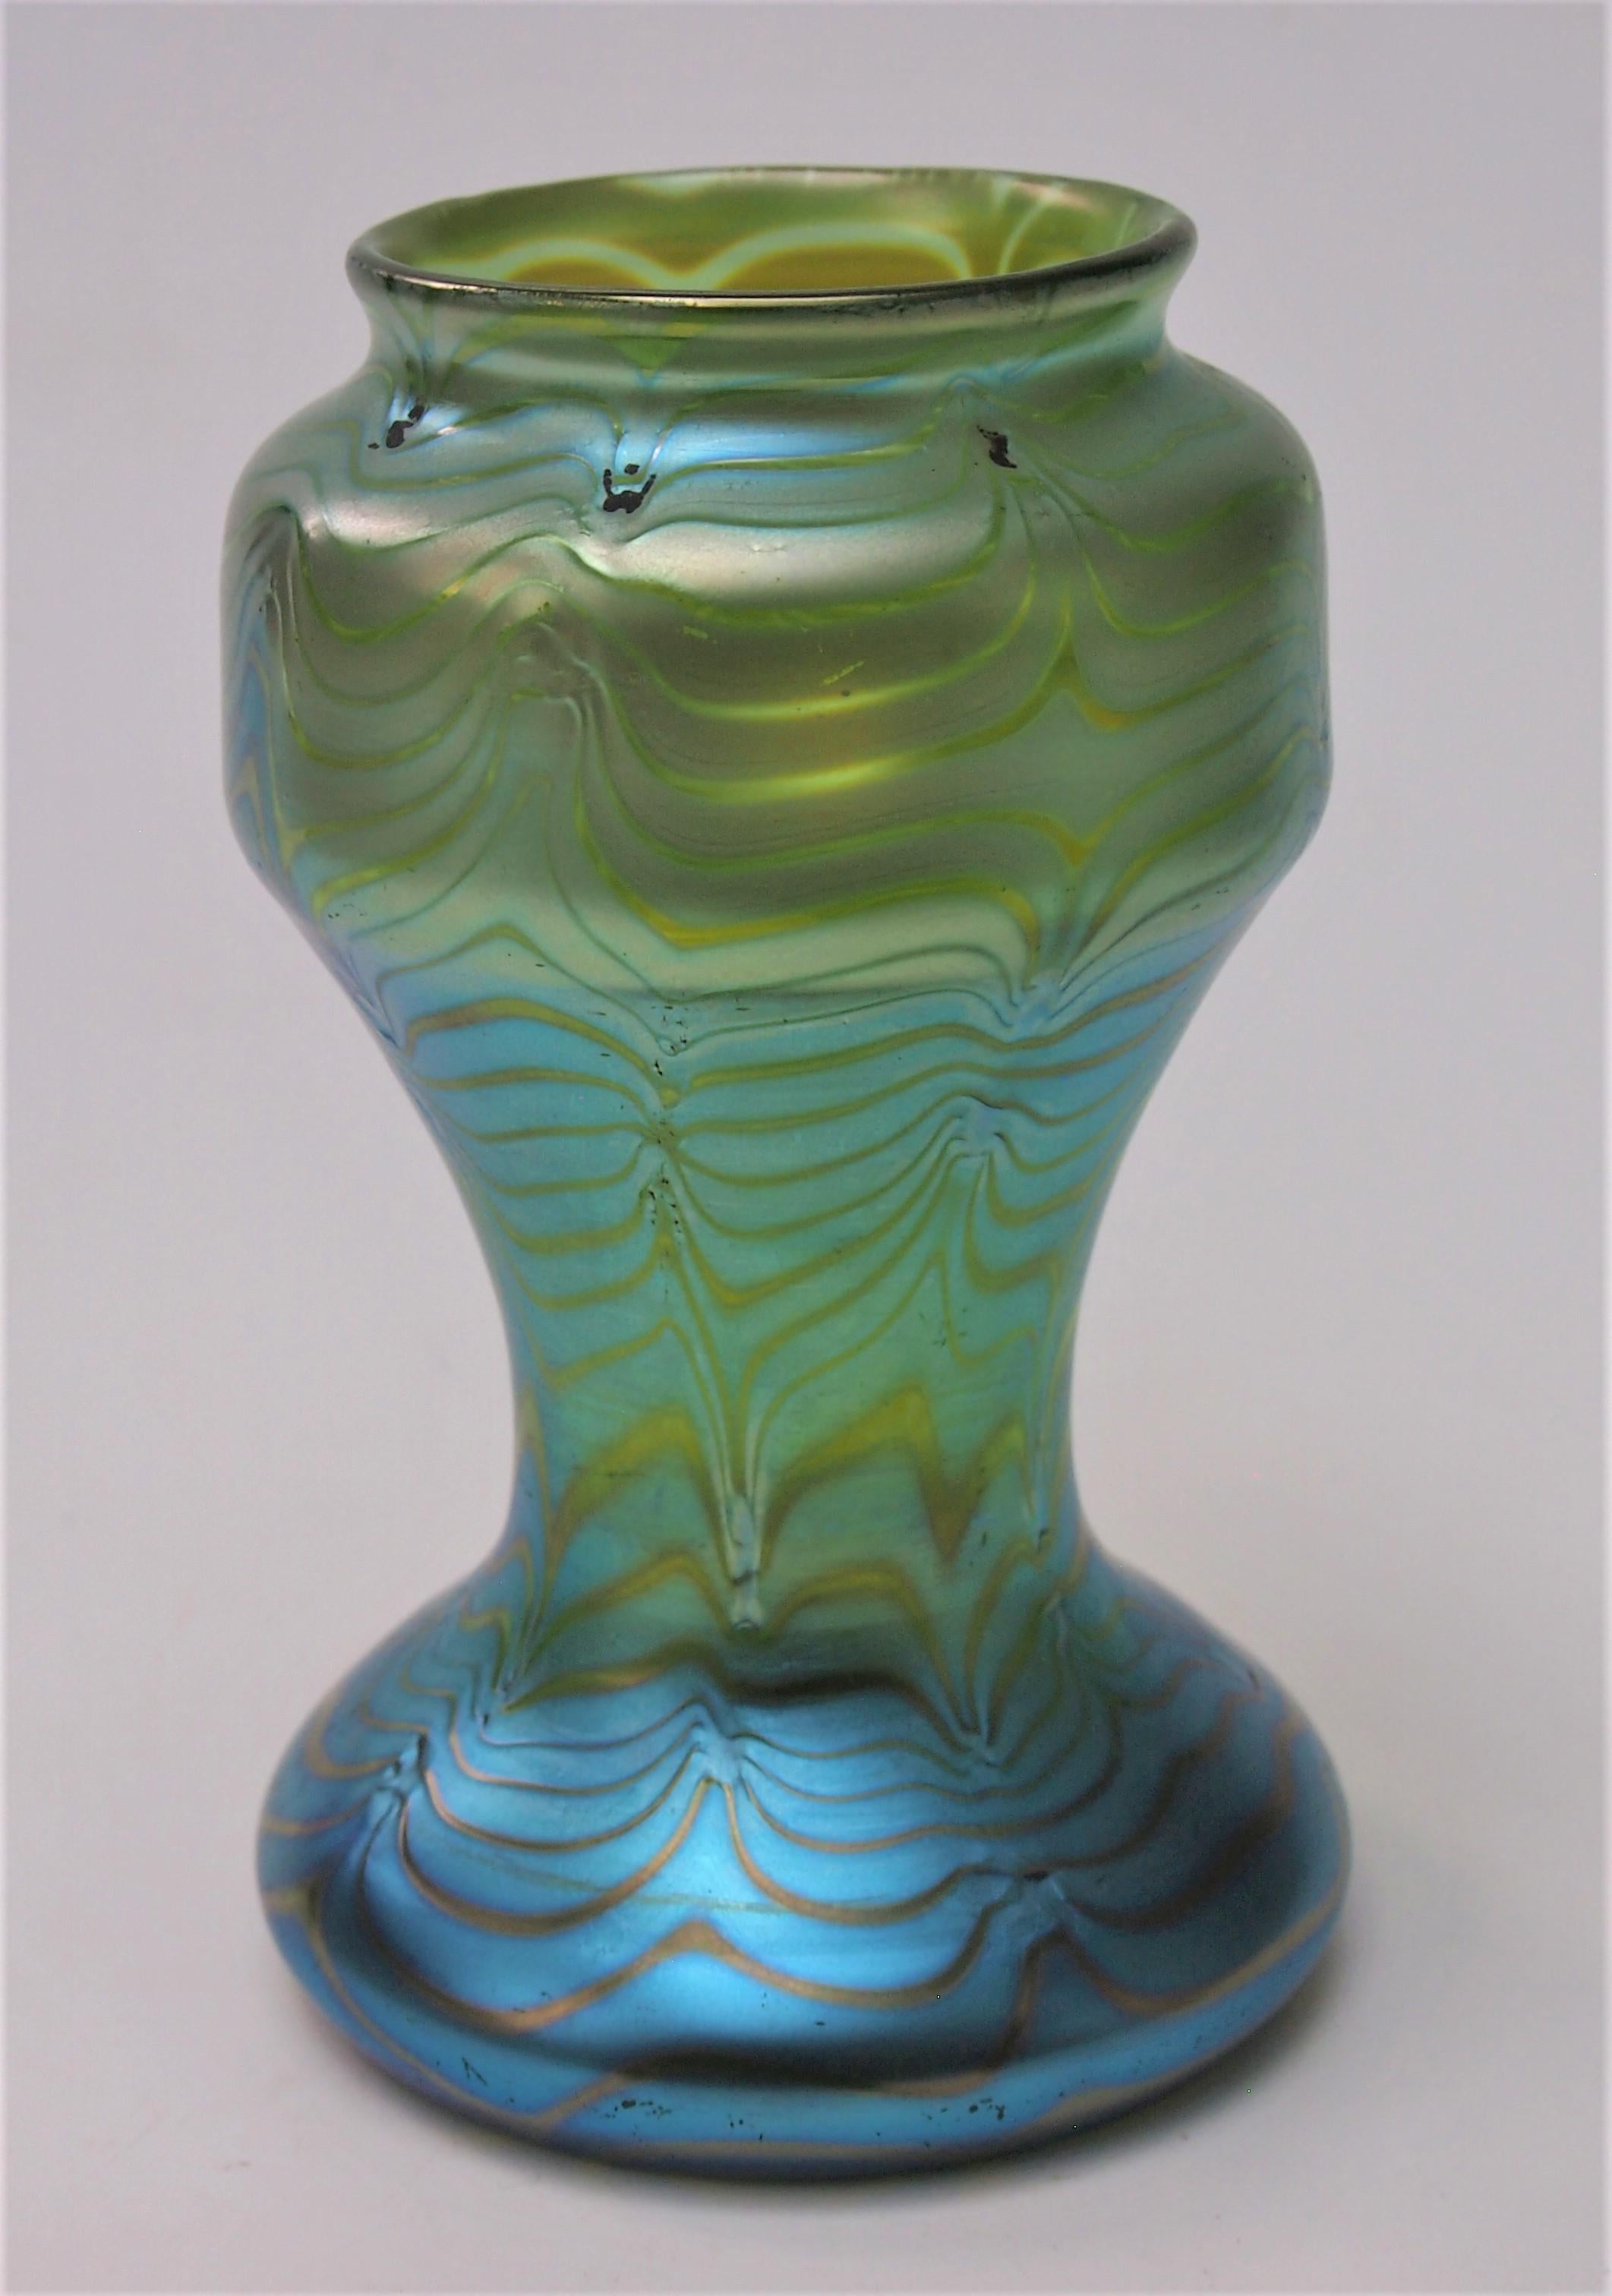 Fabuleux exemple de vase Loetz Phaenomen crete (base verte) ref 85/3780 fabriqué vers 1902. Le vase vert est recouvert d'un plumage bleu argenté, qui a été travaillé à la main pour donner un aspect ondulé. Notez que les marques d'usinage laissent de